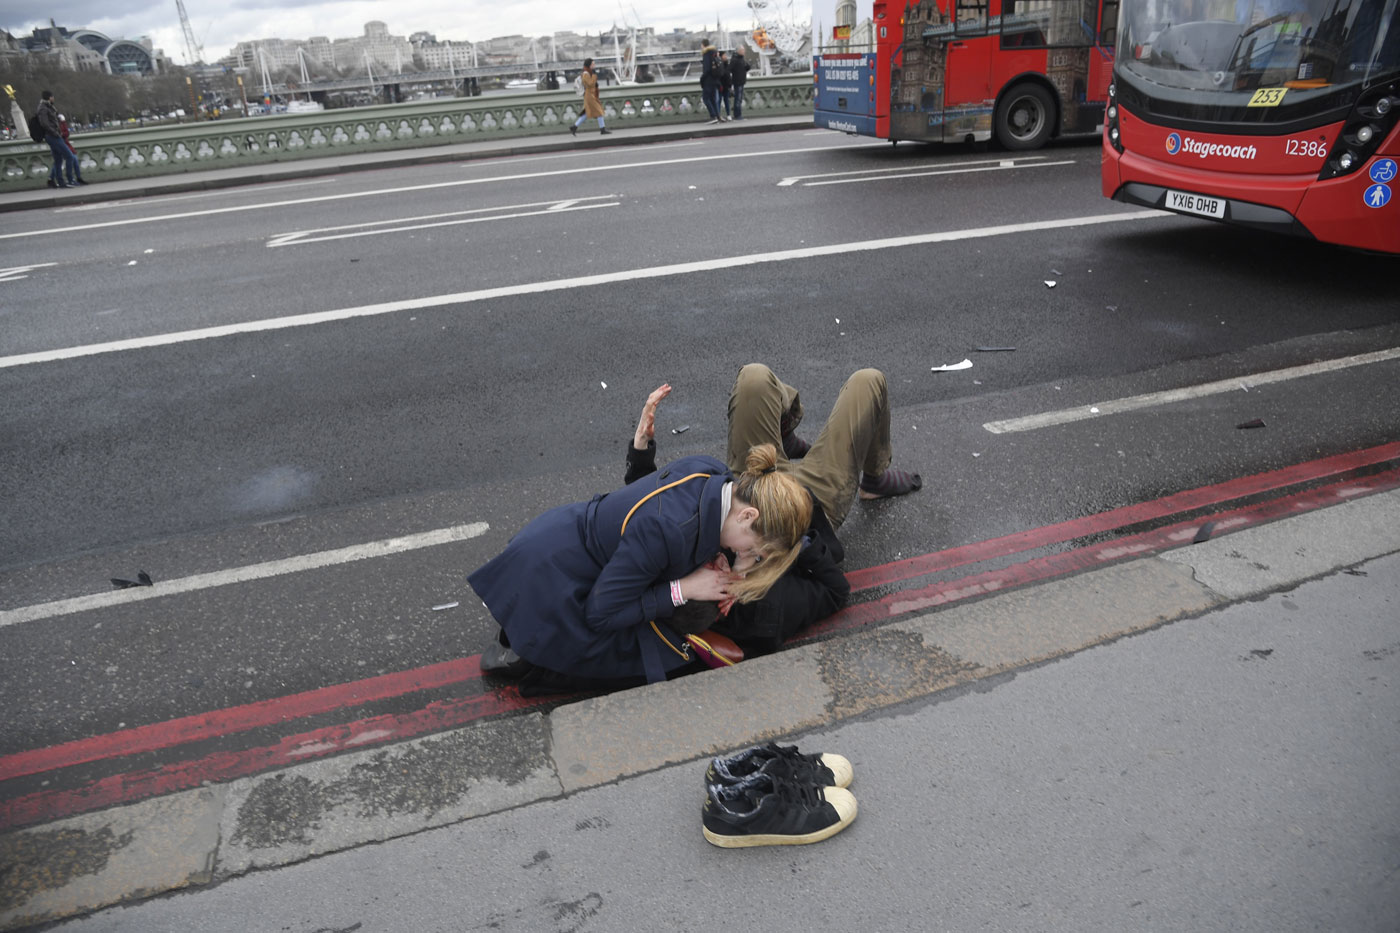 La historia detrás de una de las fotos más conmovedoras del atentado en Londres